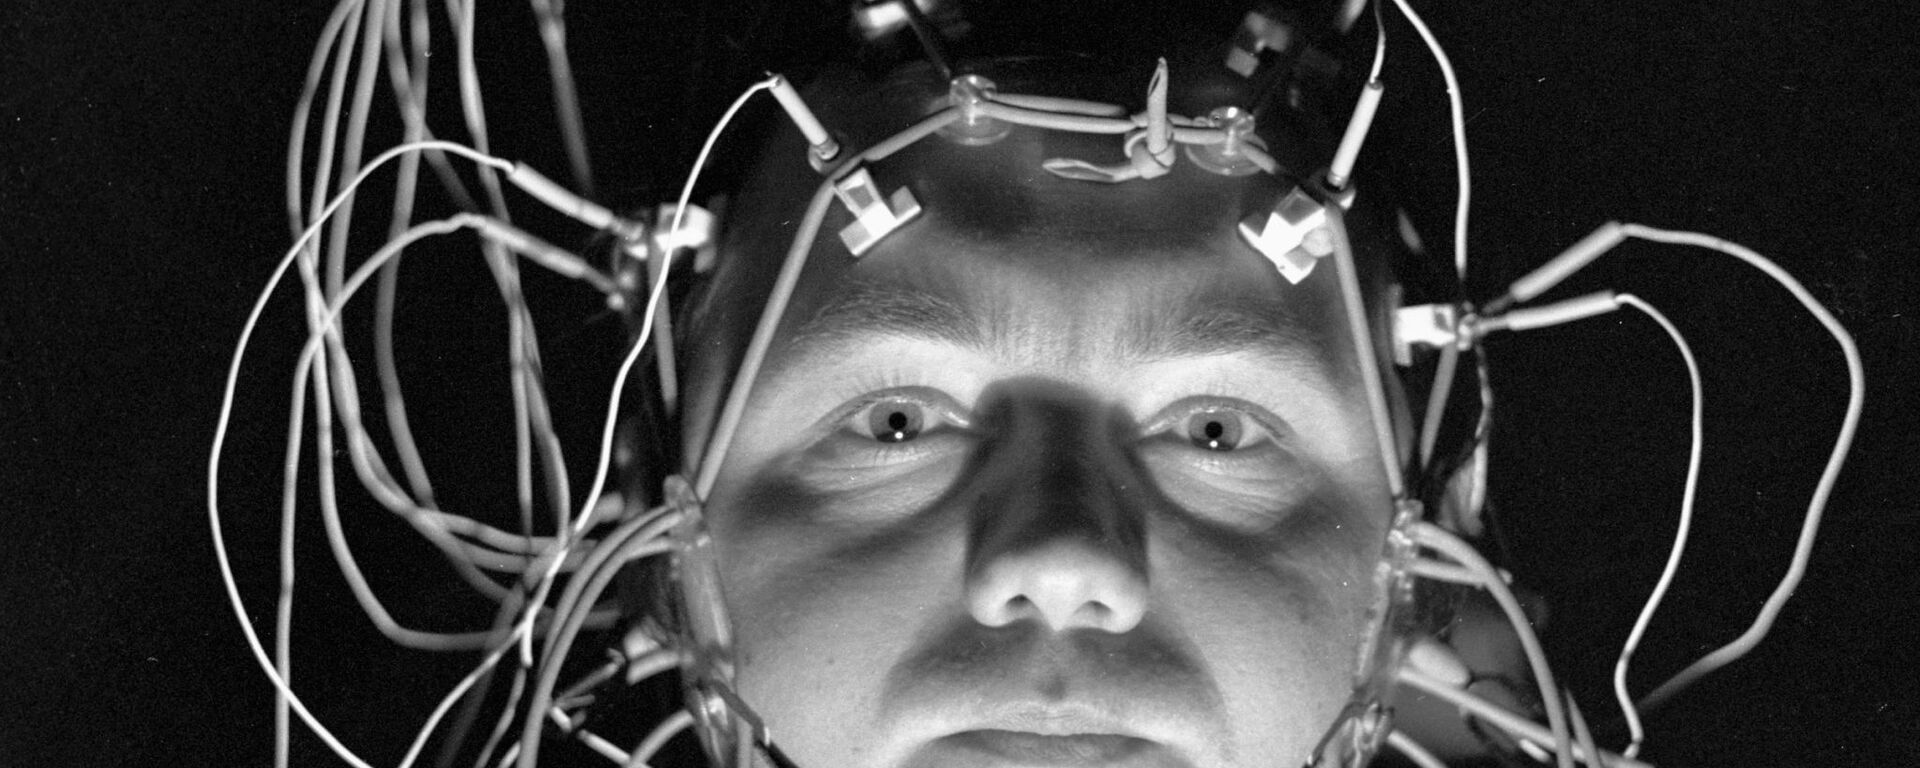 мозг человека - Sputnik Արմենիա, 1920, 22.05.2021